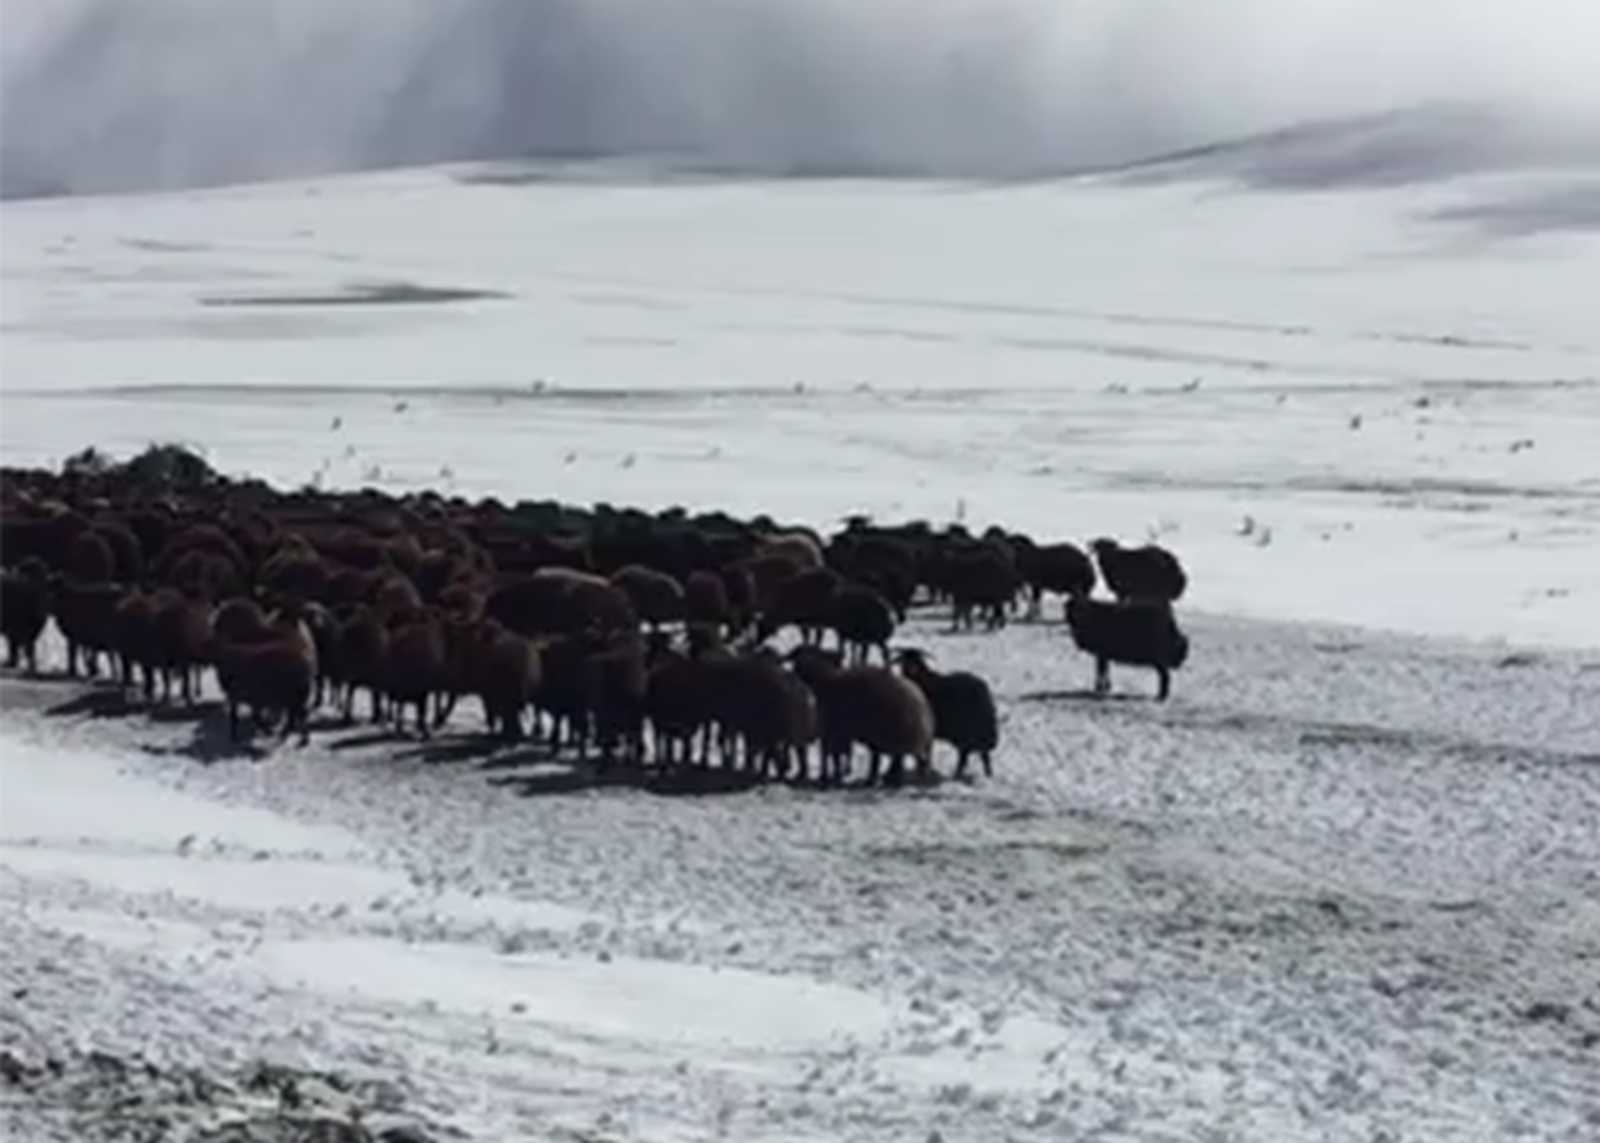 Ardahan’da kar ve tipide mahsur kalan yaylacılar ve koyun sürüsü kurtarıldı #ardahan